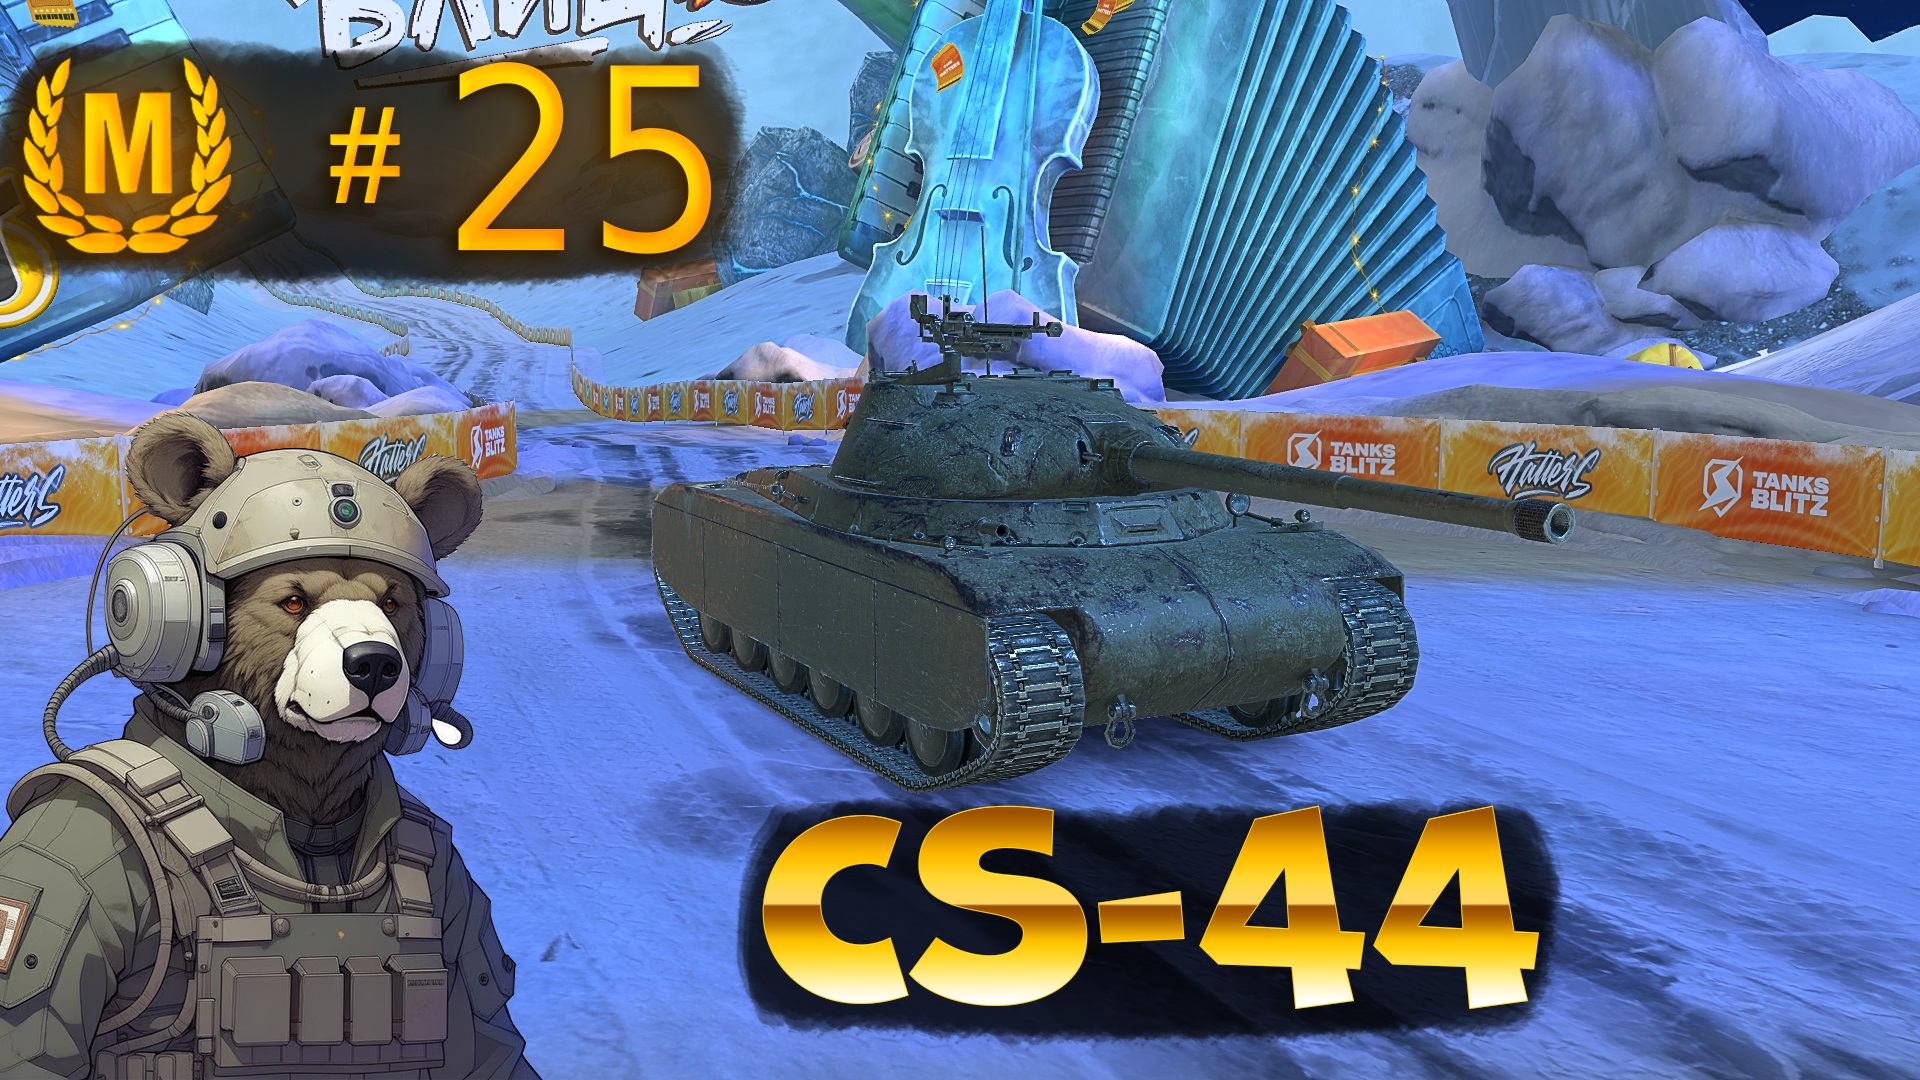 Мастер на CS-44, польский танк (7 уровень) в Tanks Blitz